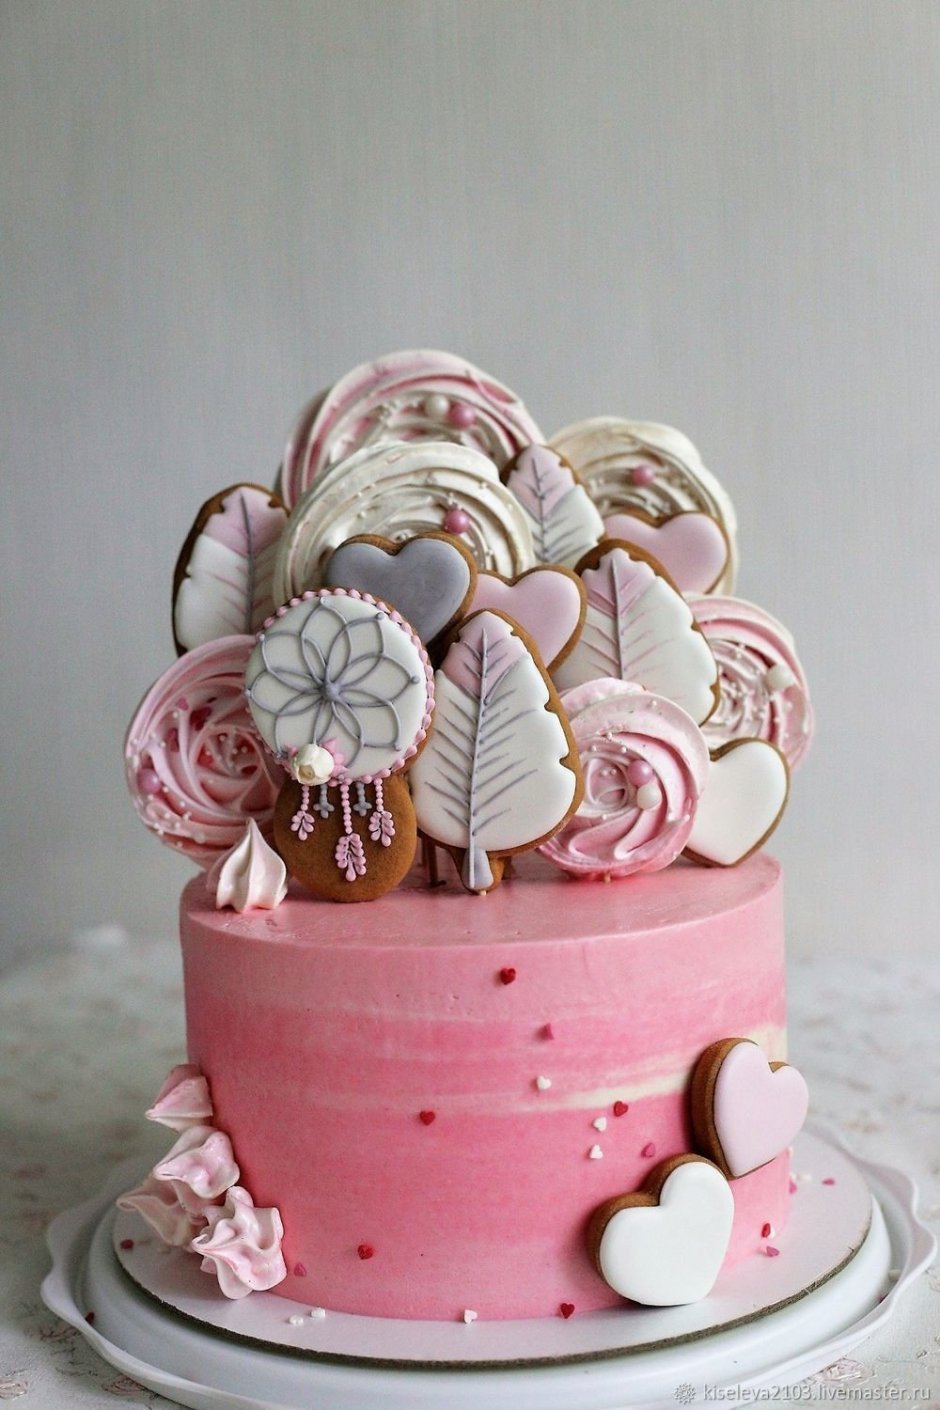 Декор торта пряниками